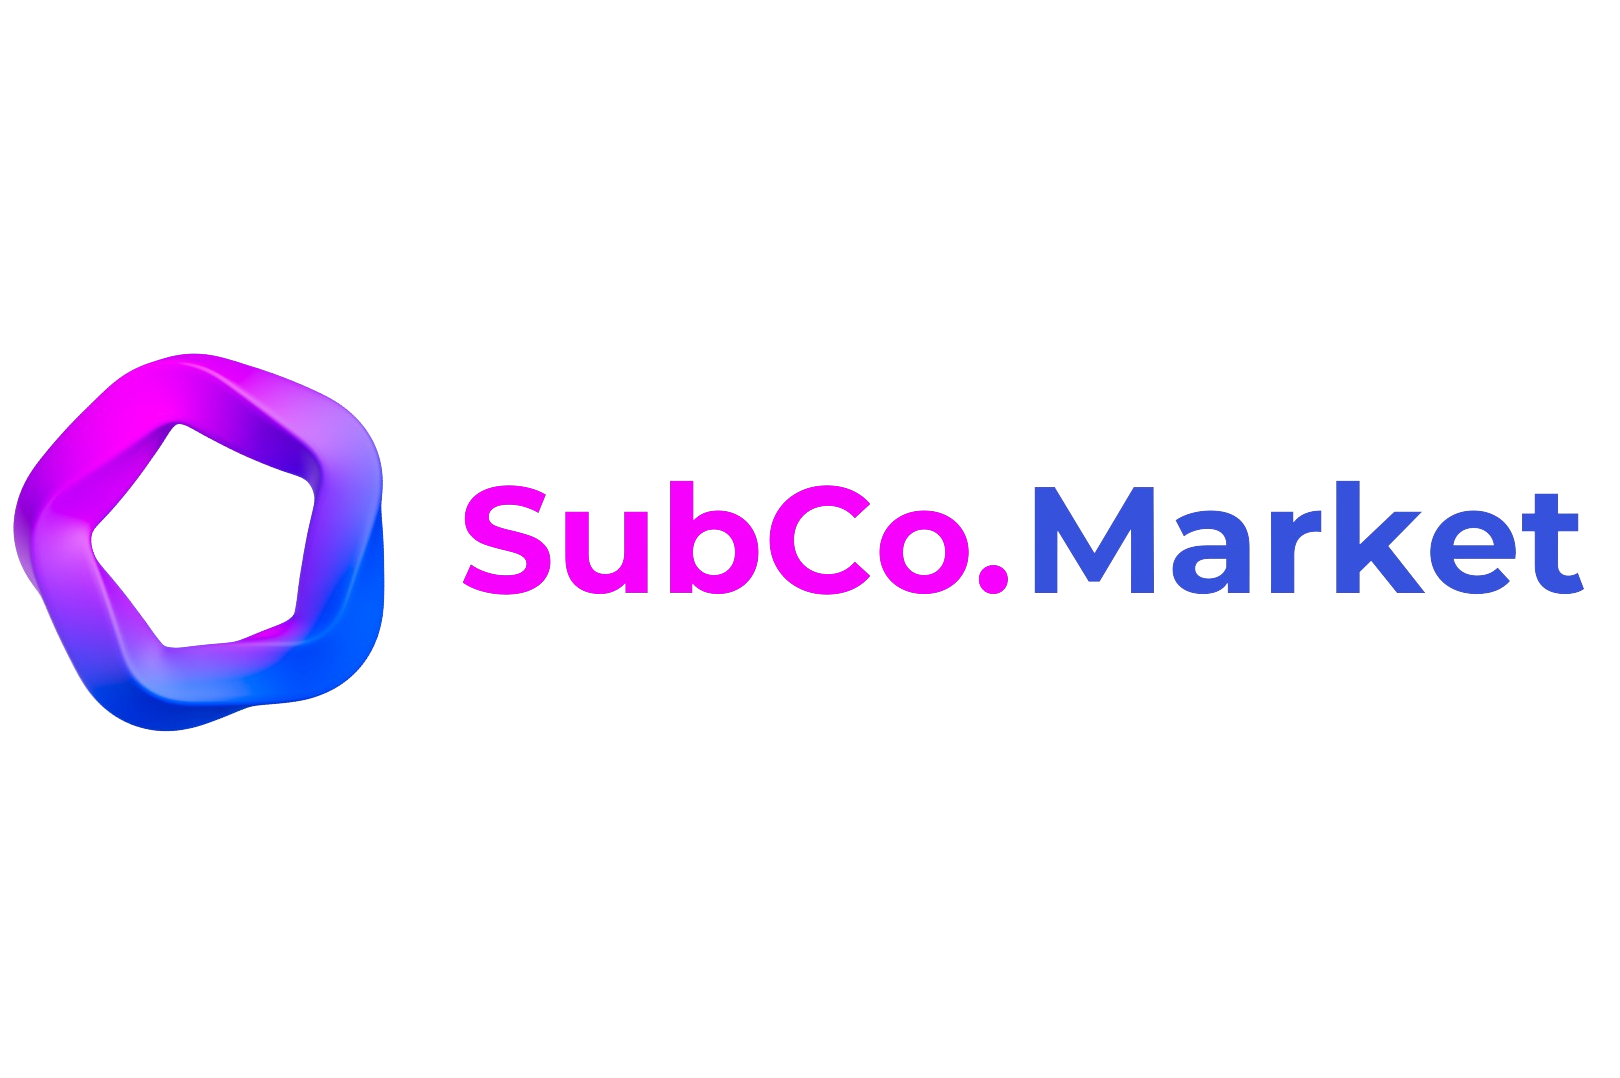 subco.market